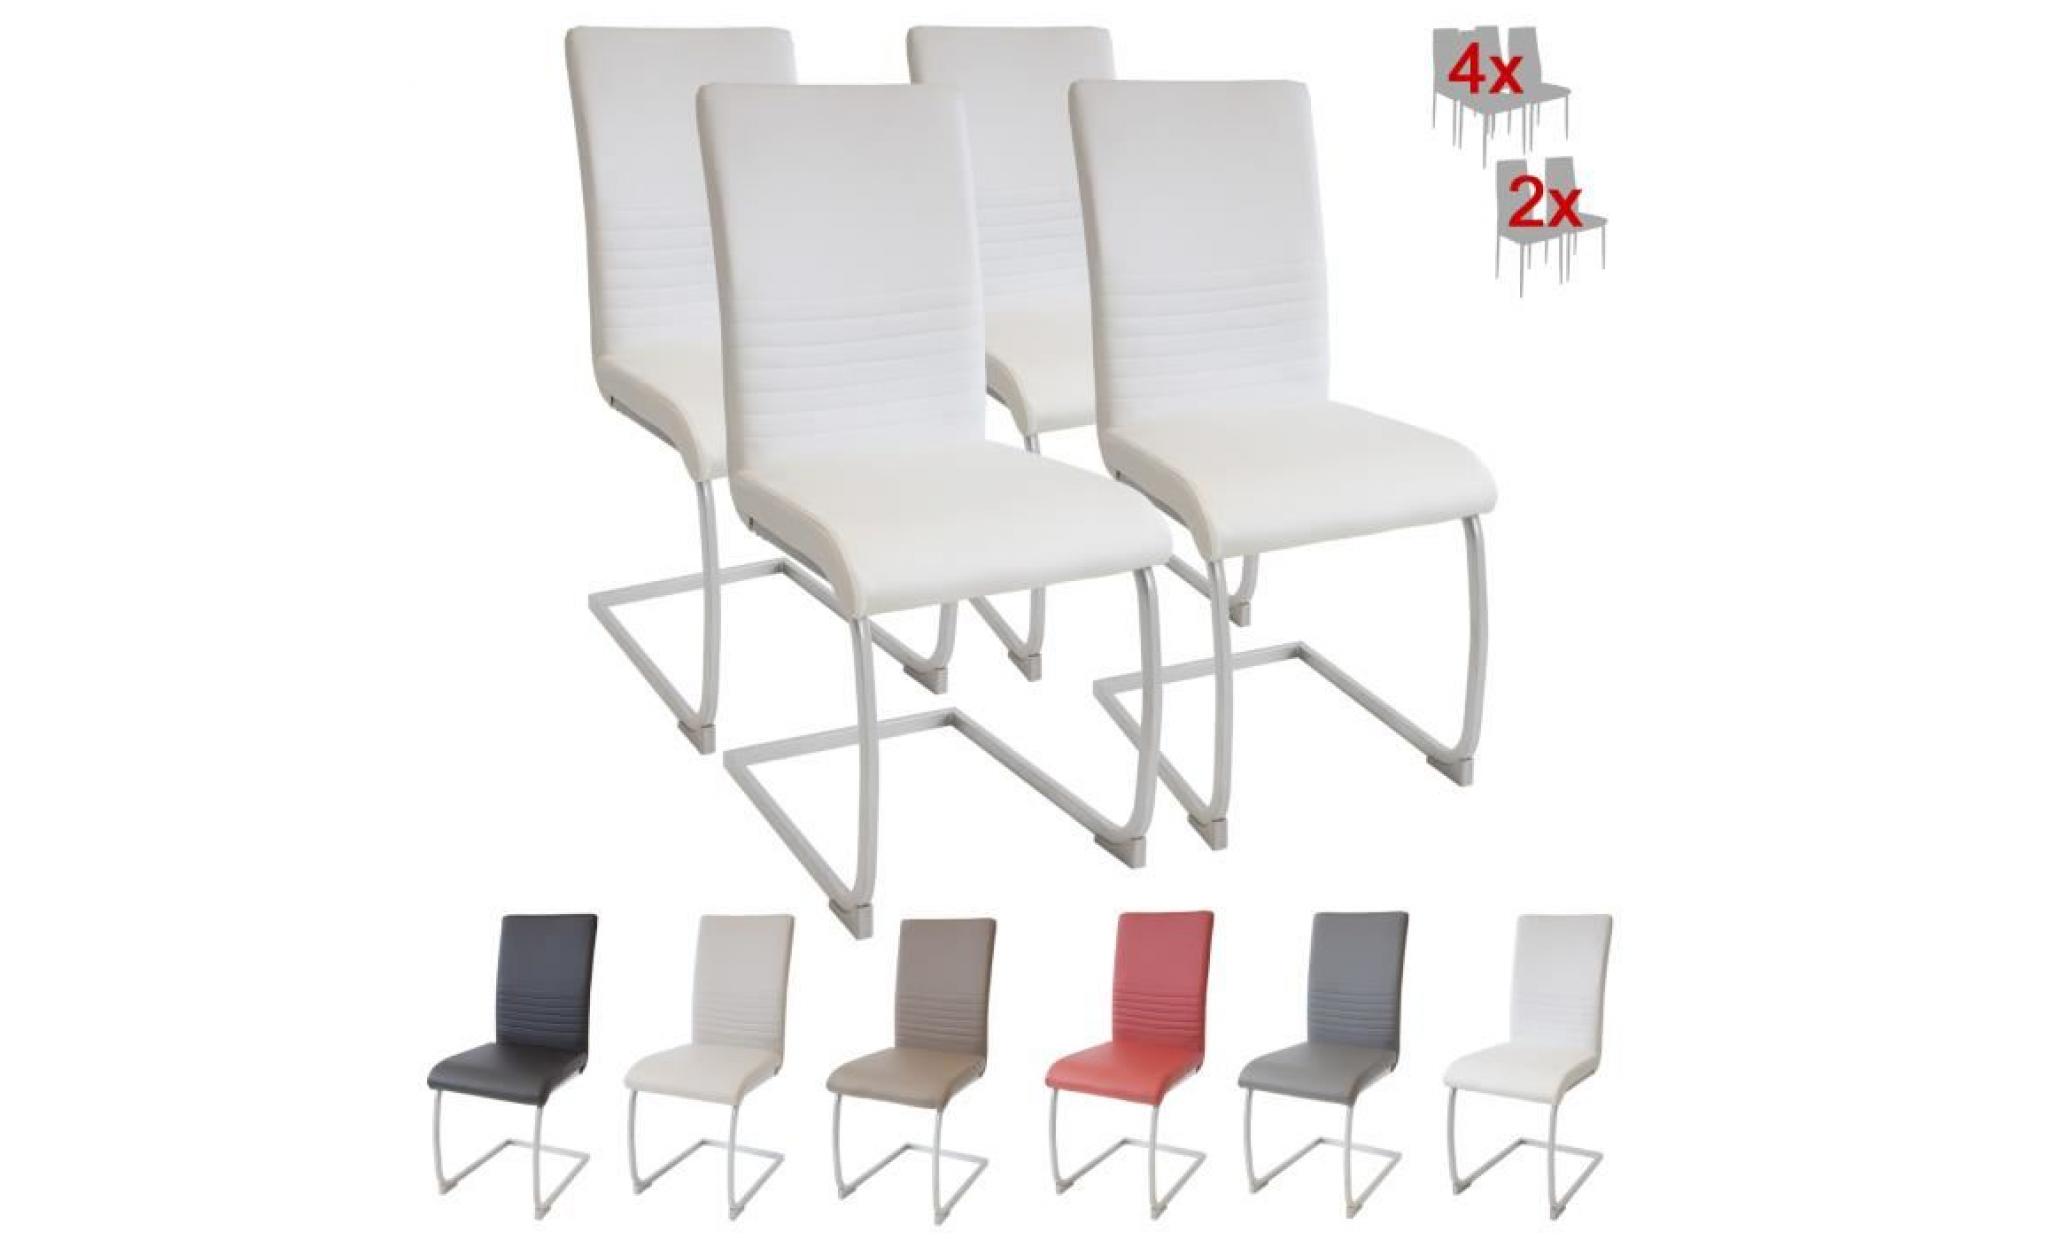 albatros chaise cantilever murano lot de 4 chaises, blanc, testé par sgs